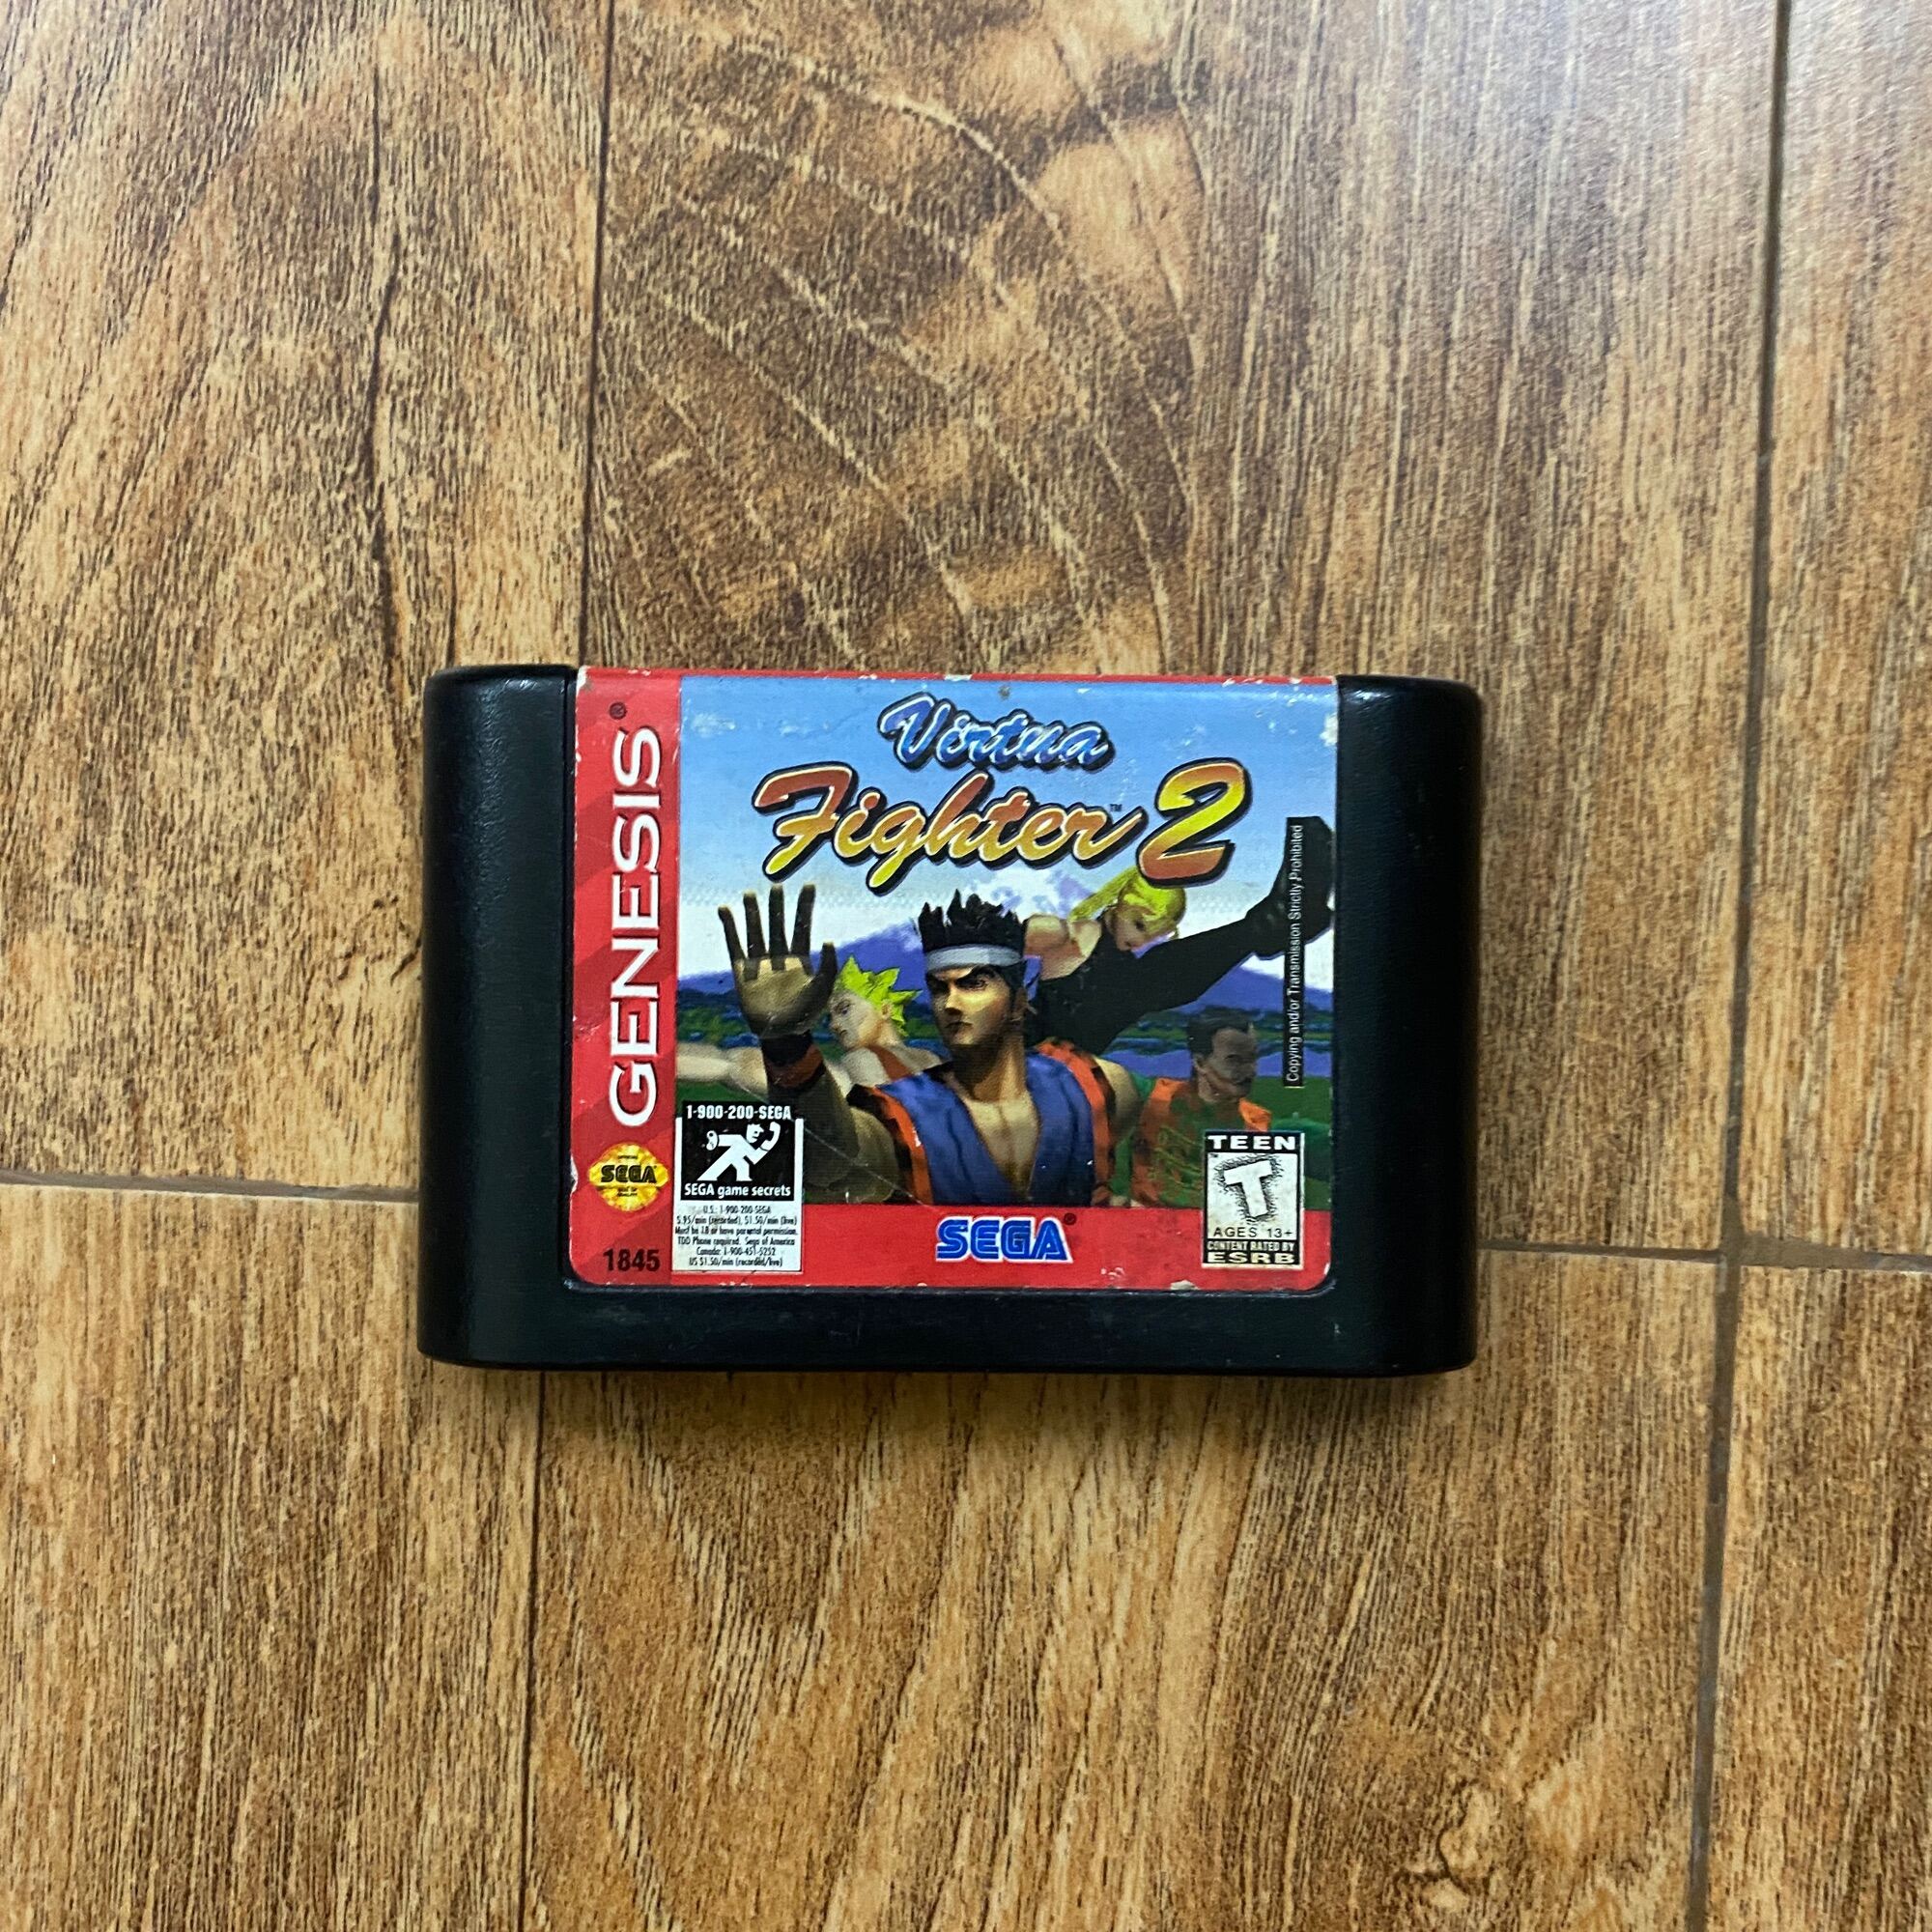 Băng game Virtual Fighter 2 Sega hệ PAL